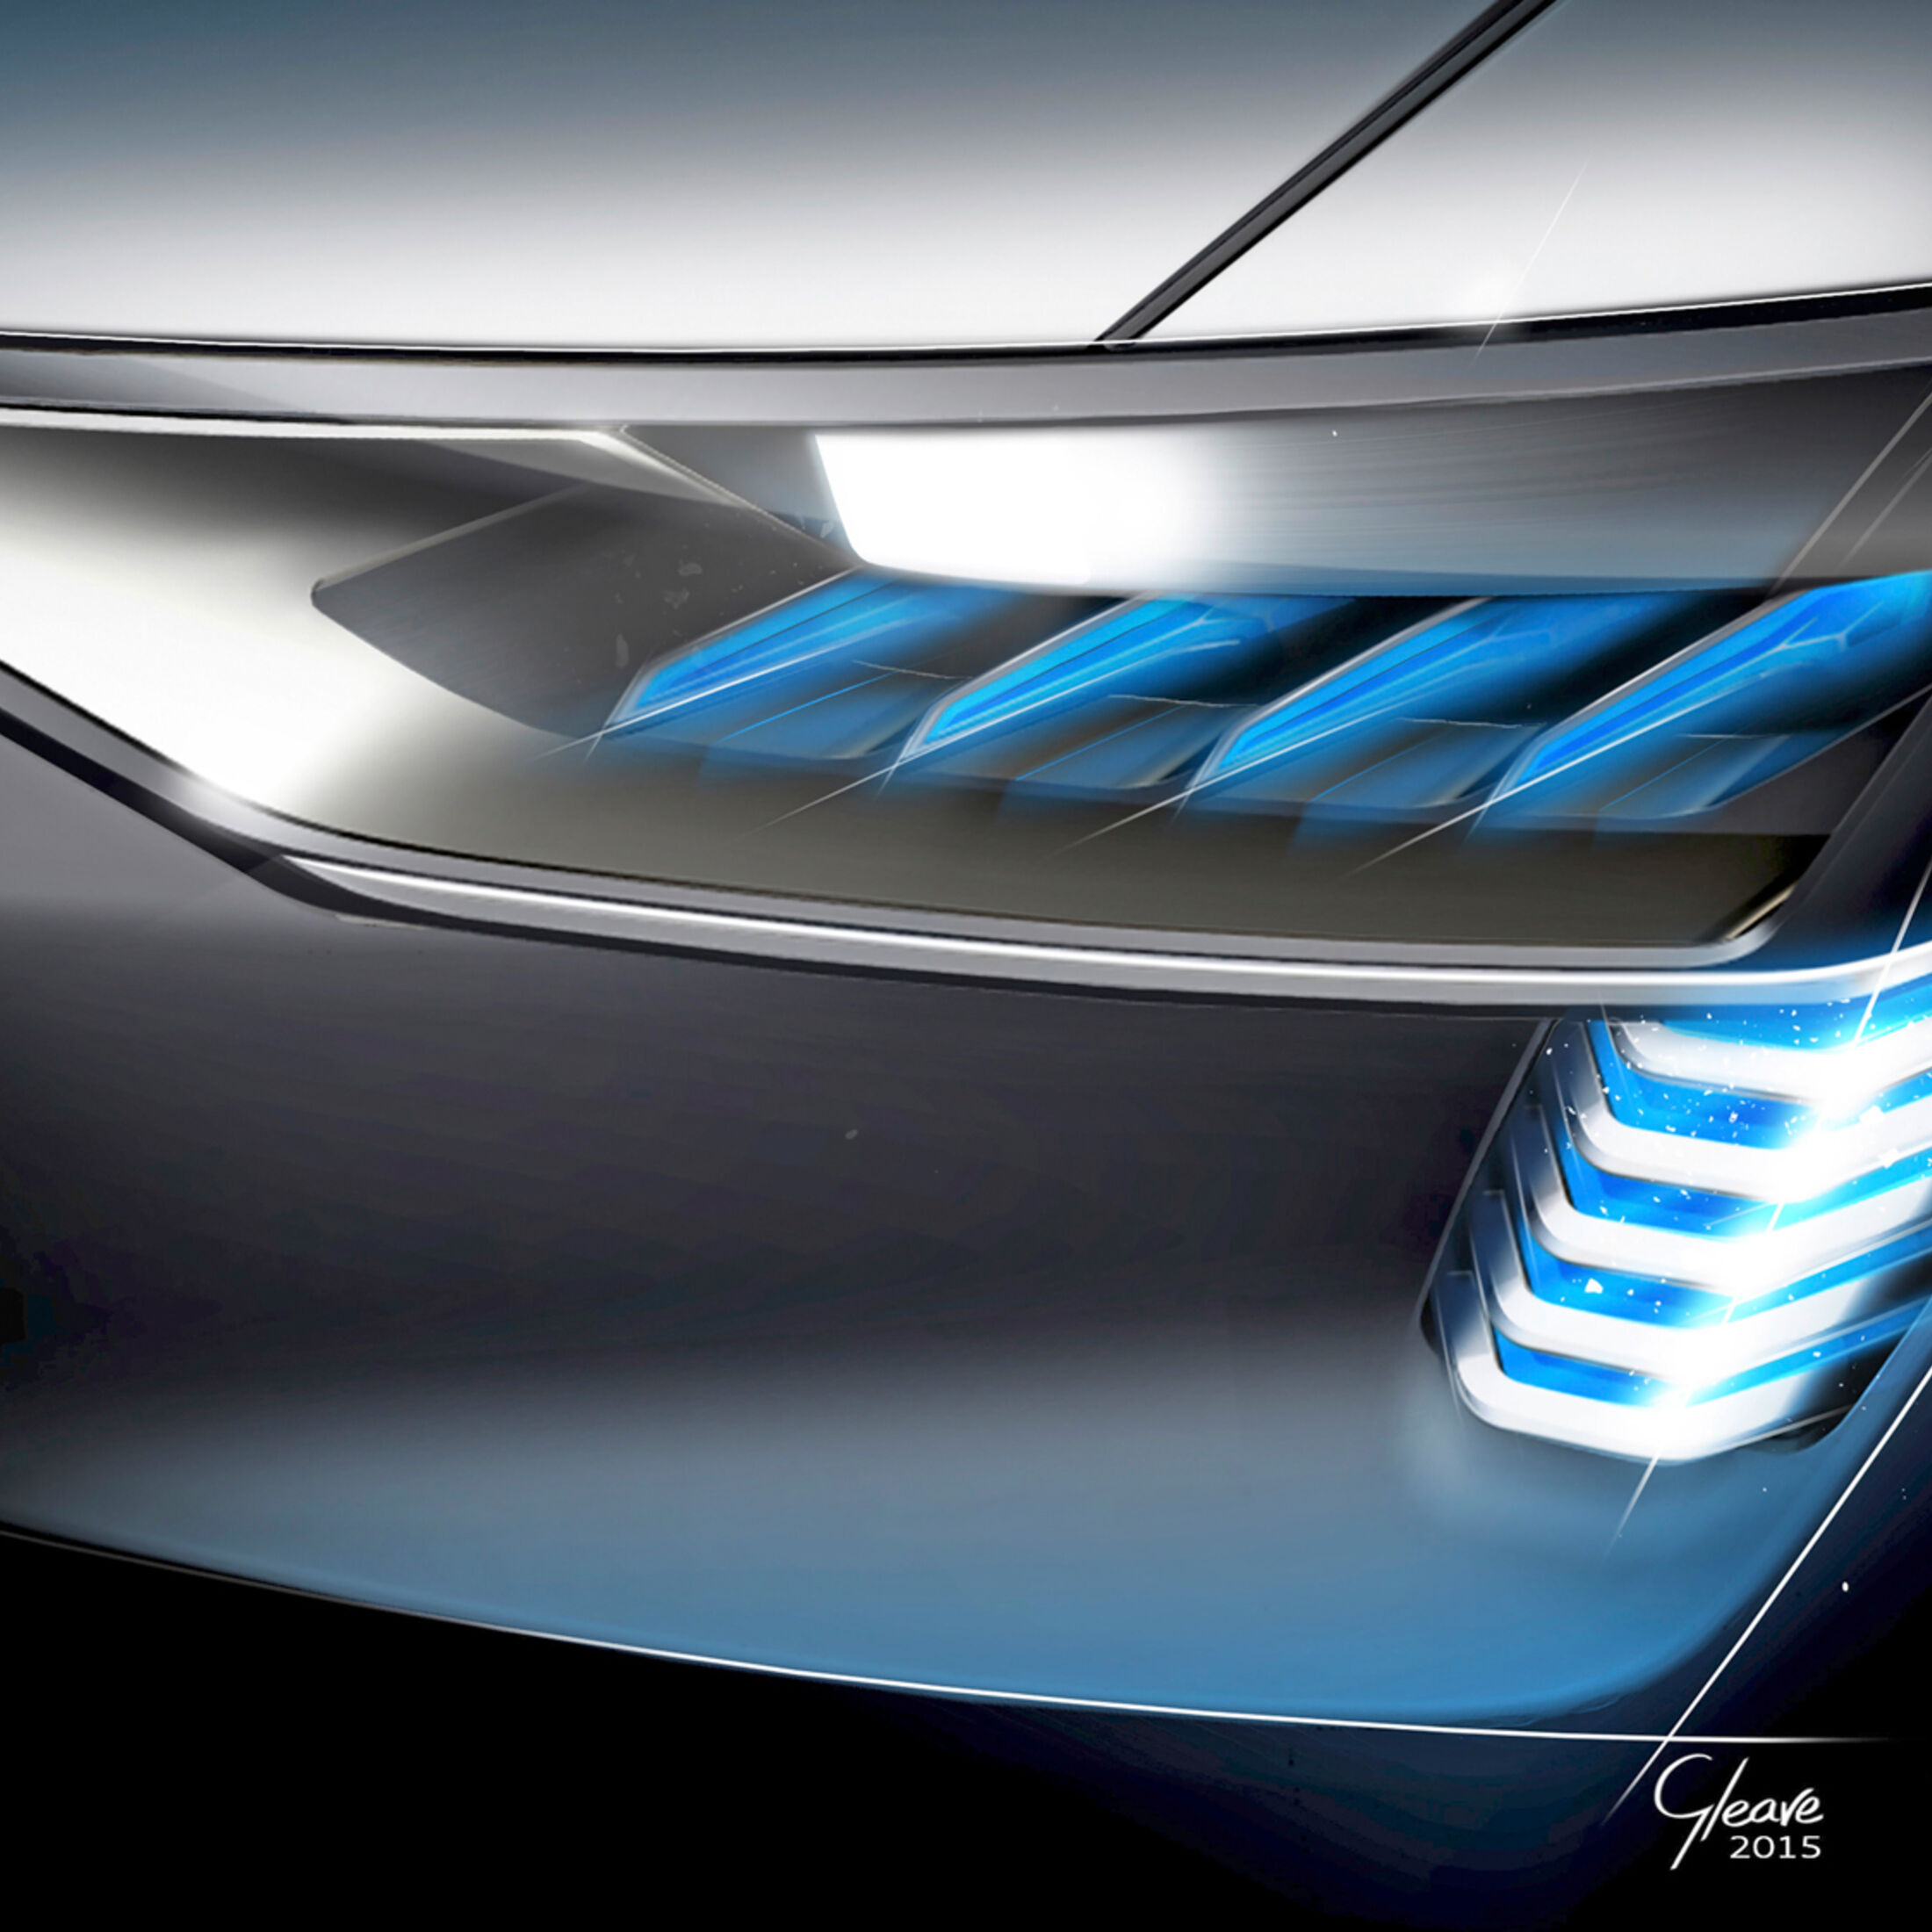 Fahrzeugbeleuchtung: OLEDs als Rücklichter